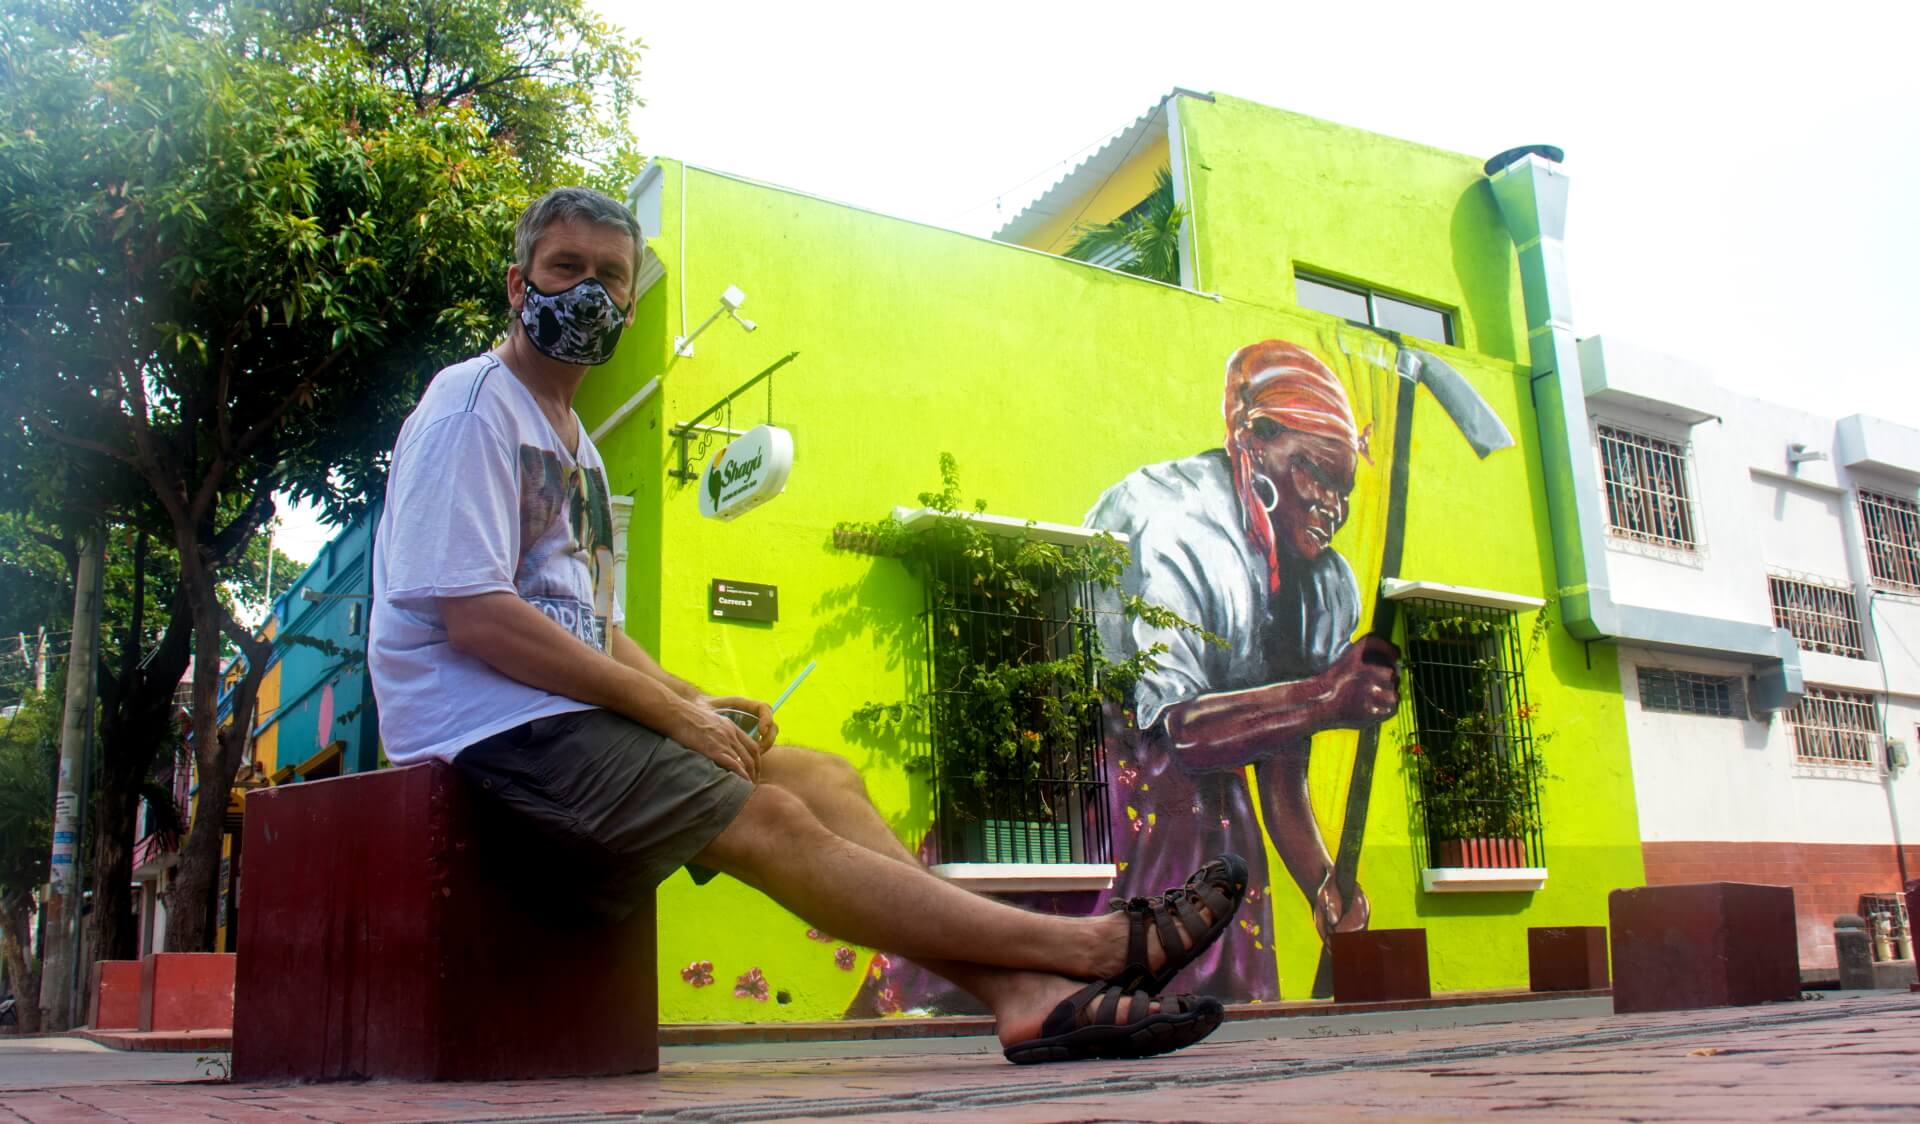 Santa Marta w Kolumbii to miasteczko gdzie mozna zobacyc wiele pieknych graffiti